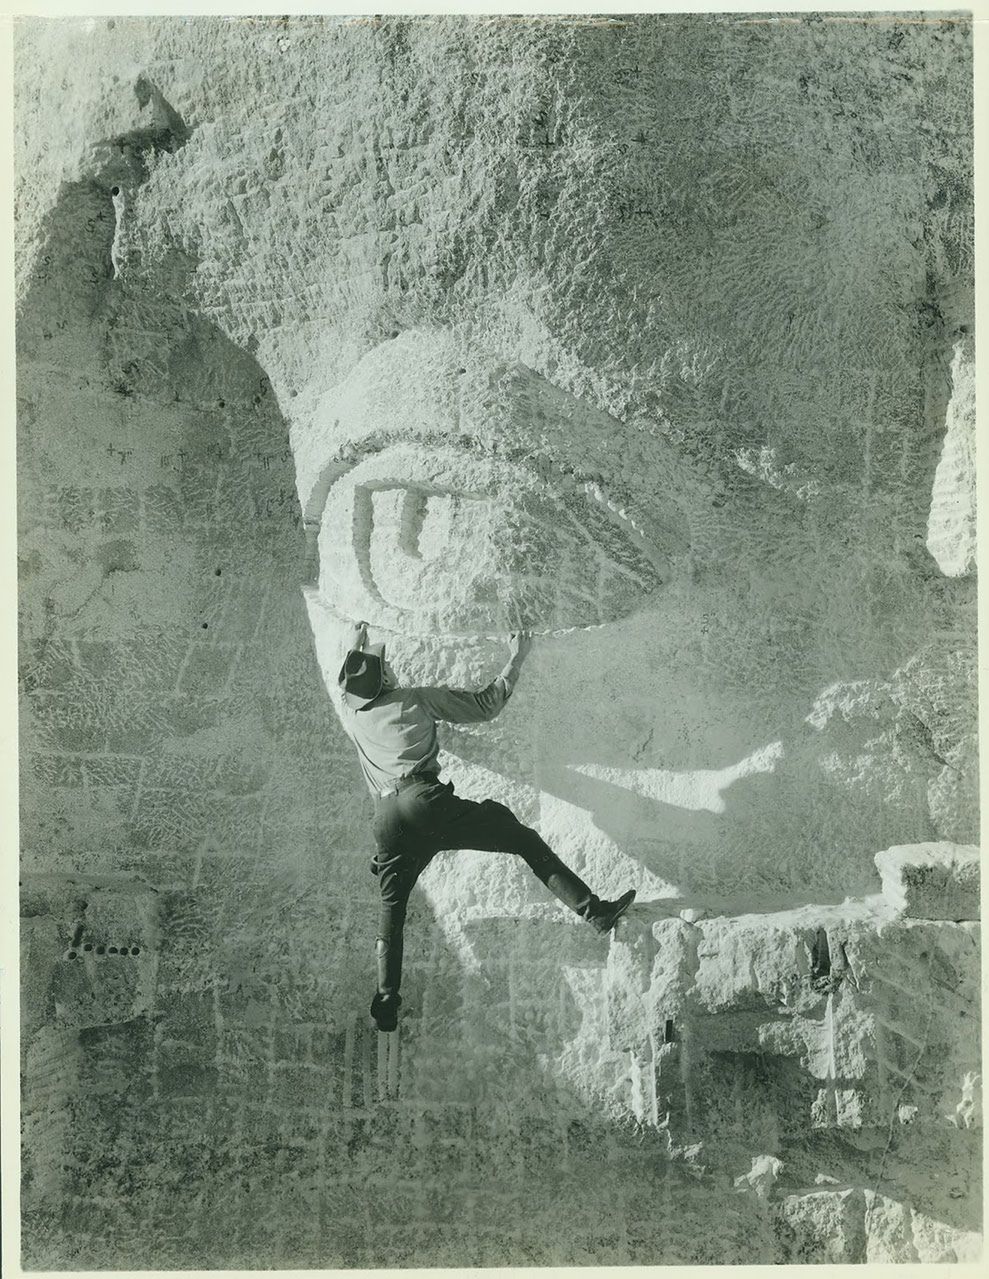 Mężczyzna ze zdjęcia wspina się na oko jednego z prezydentów USA, uwiecznionych na Górze Rushmore.